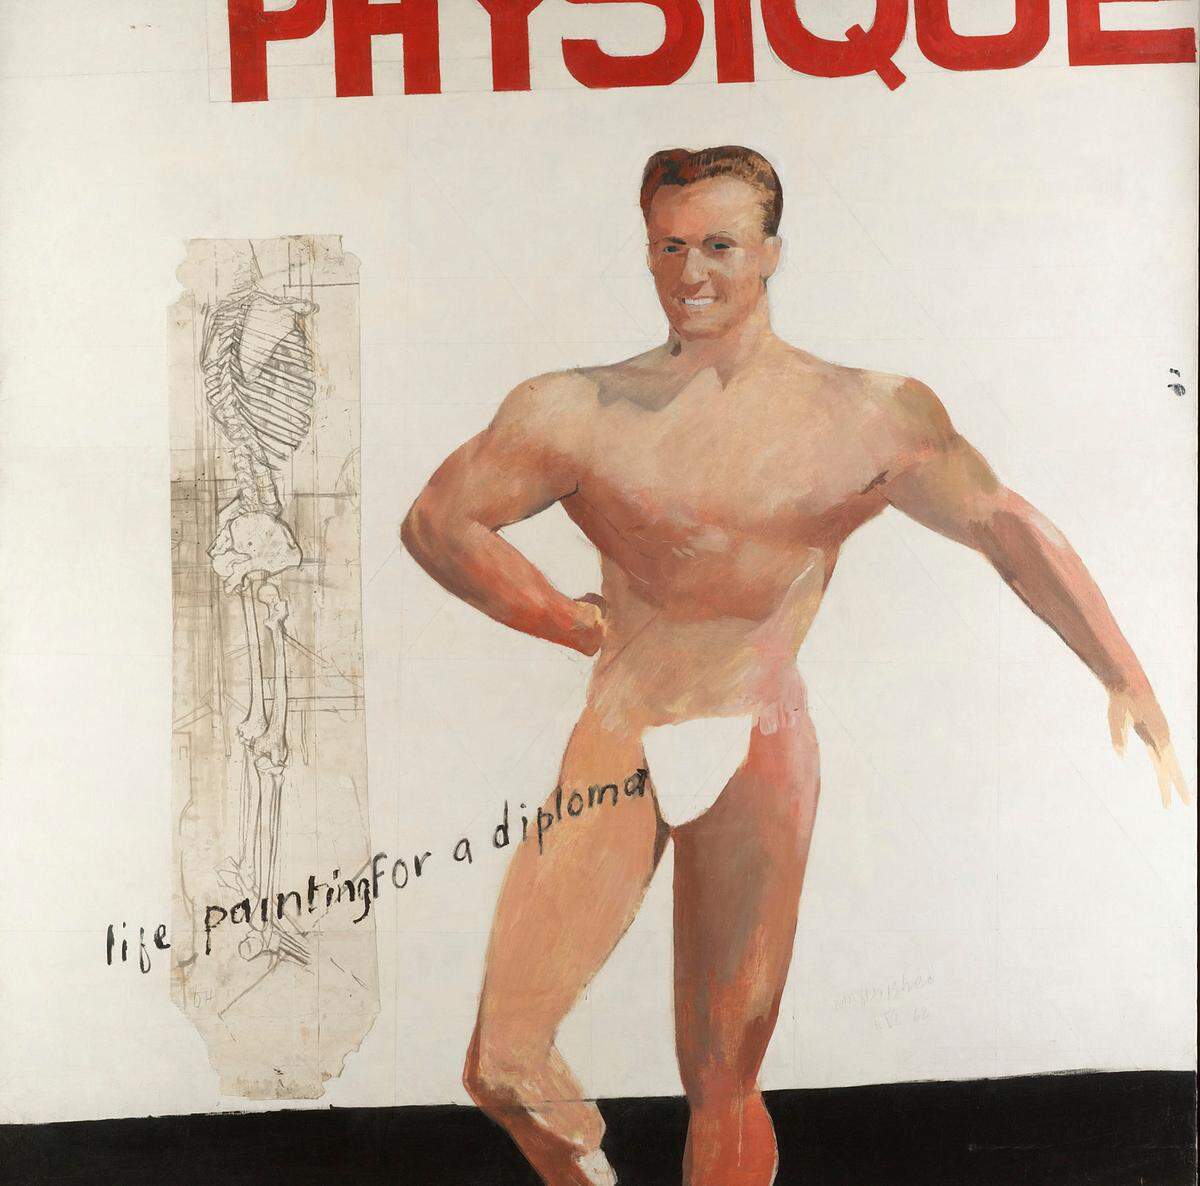 Die Schau "Queer British Art 1861-1967" läuft vom 5. April bis zum 1. Oktober. Sie nimmt die Abschaffung der Todesstrafe für sogenannte abartige sexuelle Handlungen 1861 als Ausgangspunkt und endet mit der teilweisen Legalisierung von homosexuellem Sex 1967. David Hockney: "Life Painting for a Diploma", 1962